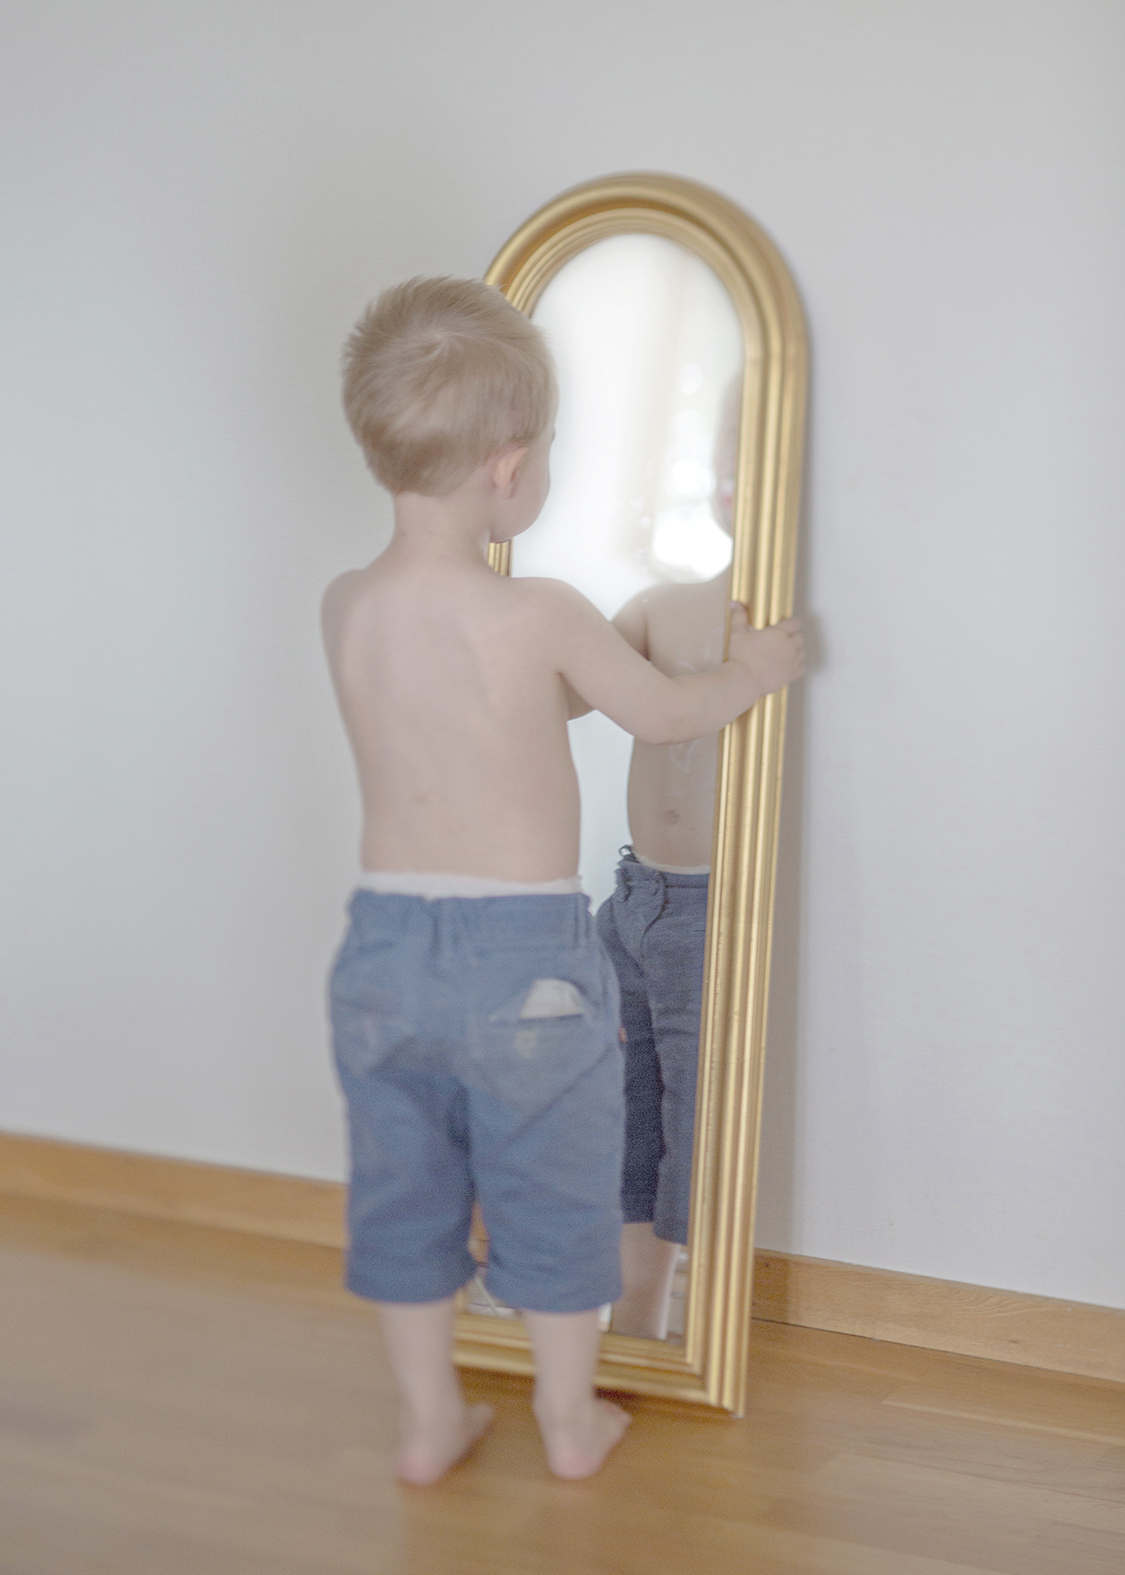 © Anna Claren
  Titel: Pojken vid spegeln. Från serien "När allt förändrades", 2018
Bildmått : 30x42 cm
Teknik: Arkivbeständig pigmentbläckutskrift 
Upplaga: 5 + 2 AP   Signerad: Ja   Pris: SEK 20 000  (avser oinramad bild)